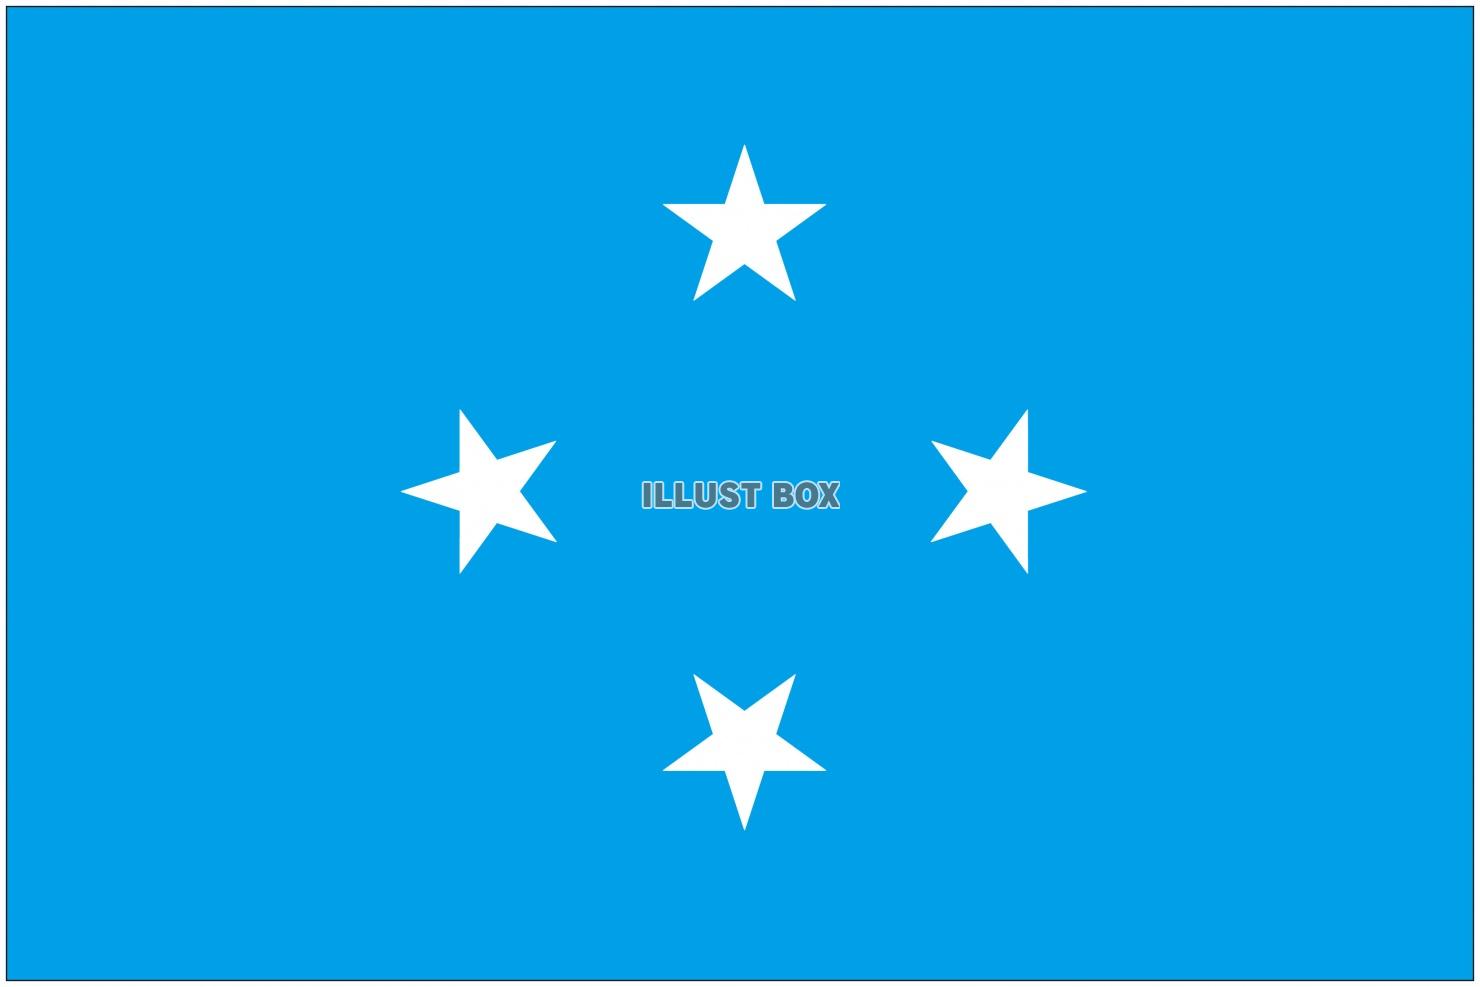 ミクロネシアの国旗